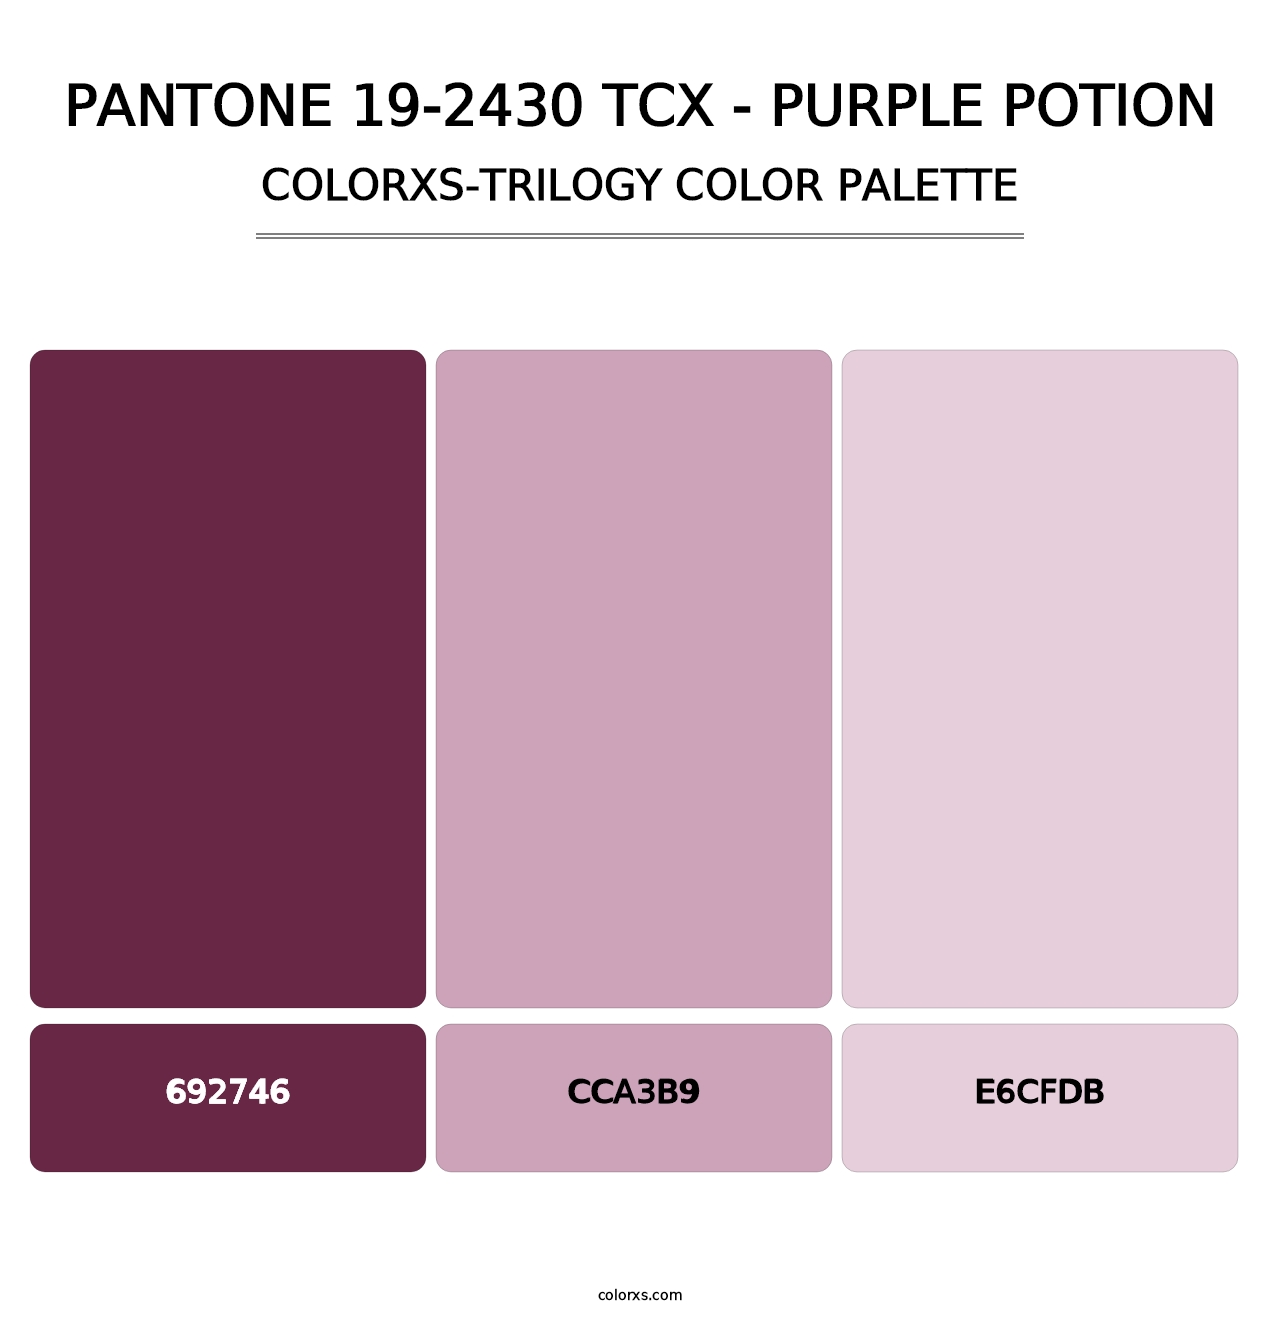 PANTONE 19-2430 TCX - Purple Potion - Colorxs Trilogy Palette